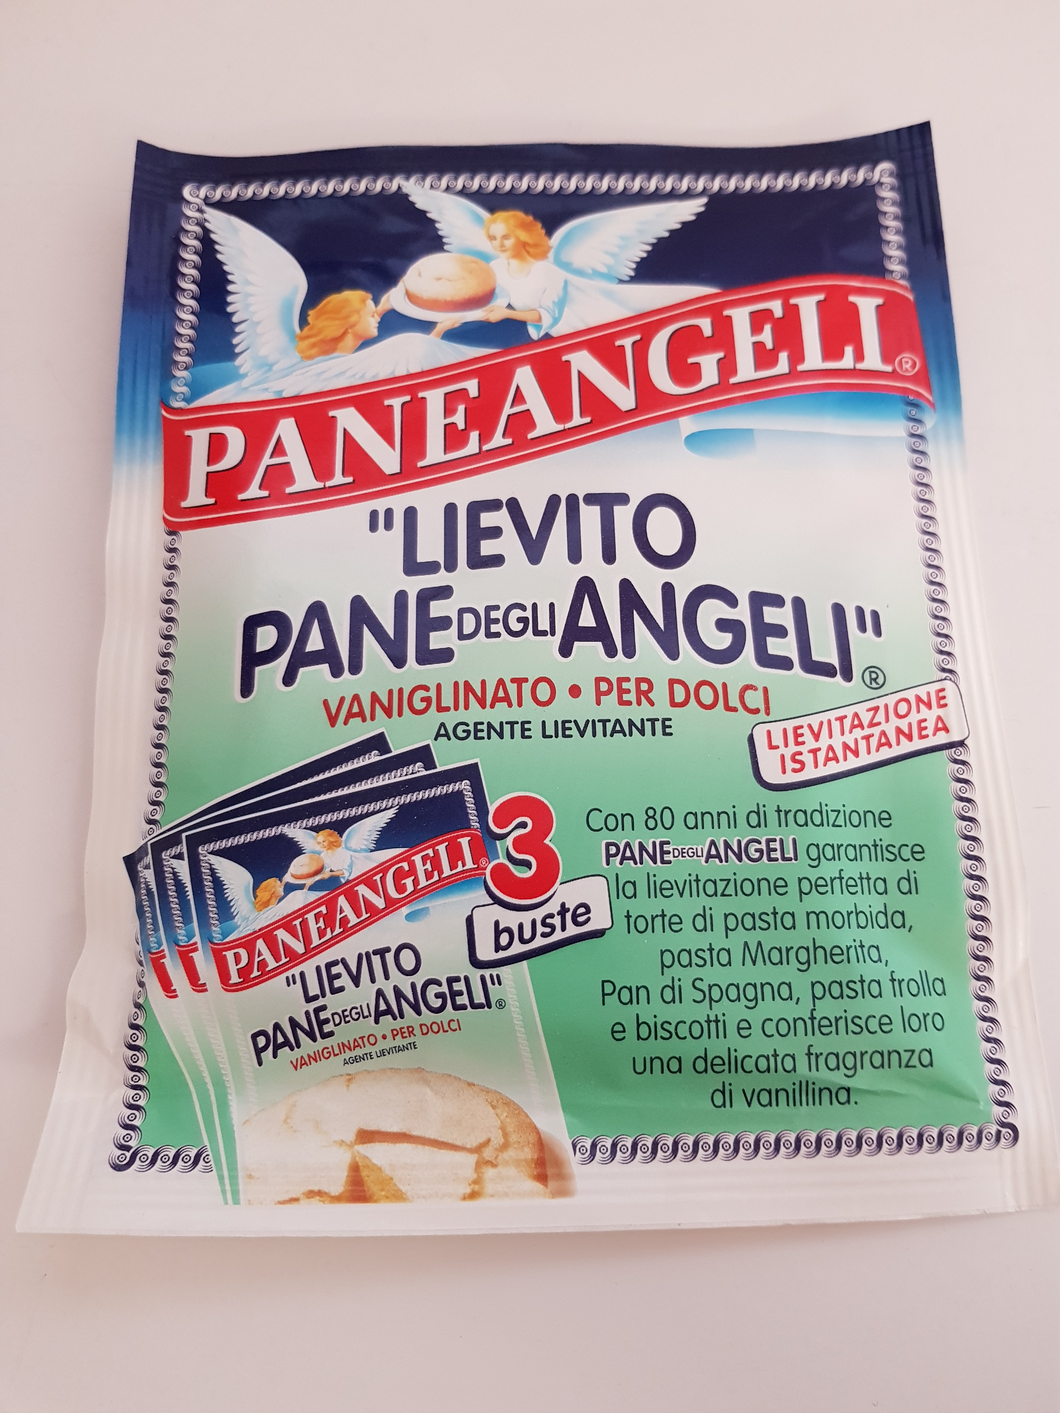 Paneangeli - Lievito (Yeast)